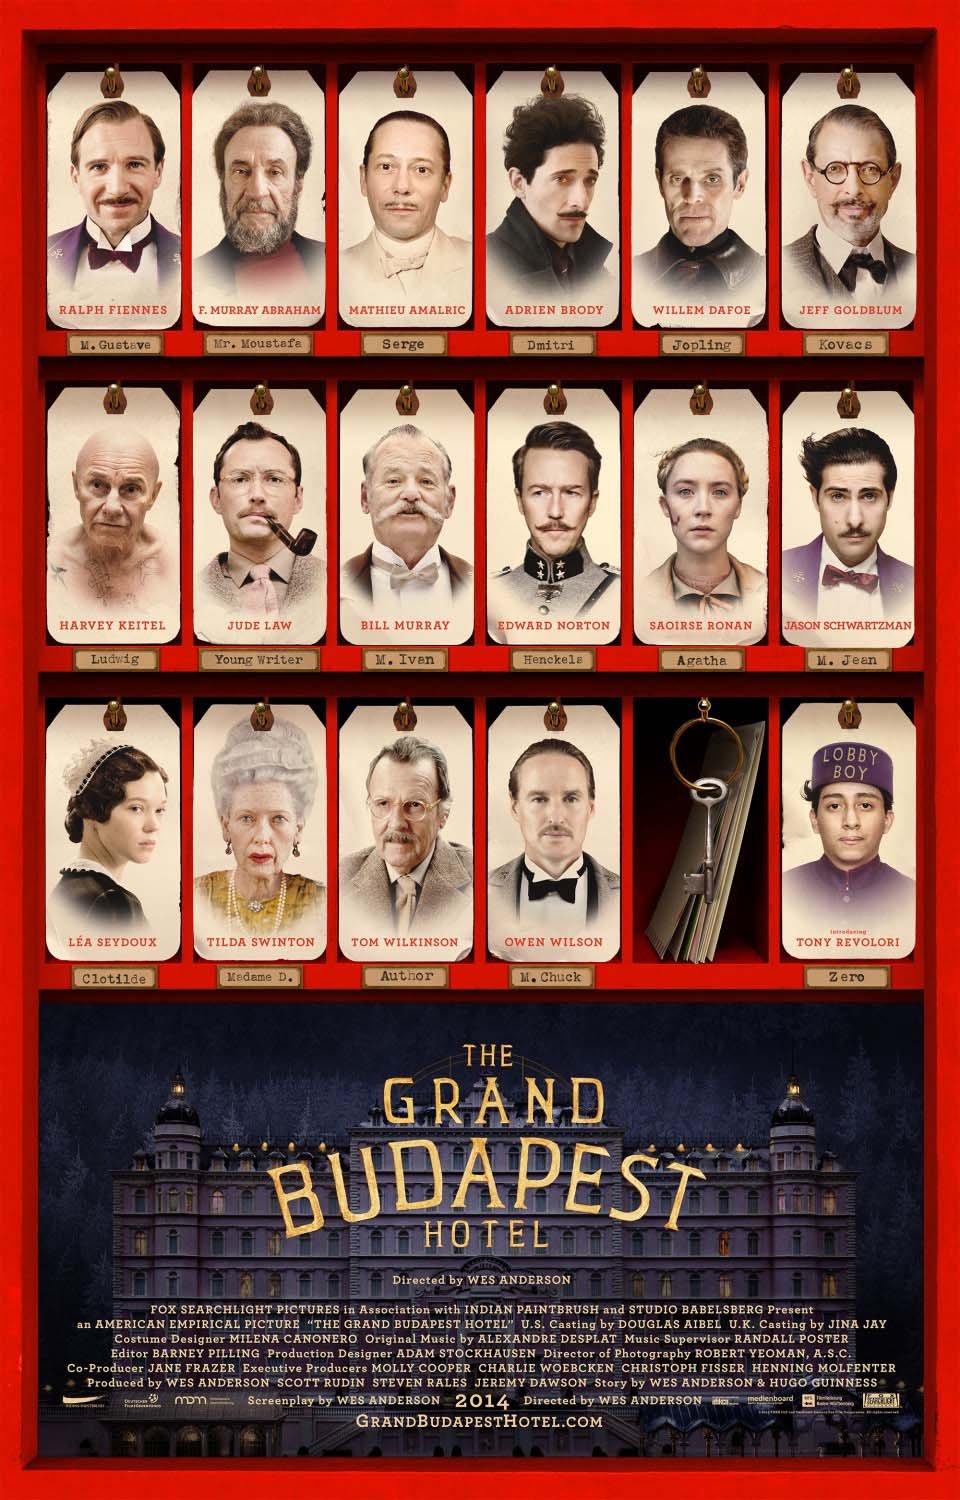 სასტუმრო გრანდ ბუდაპეშტი / The Grand Budapest Hotel ქართულად